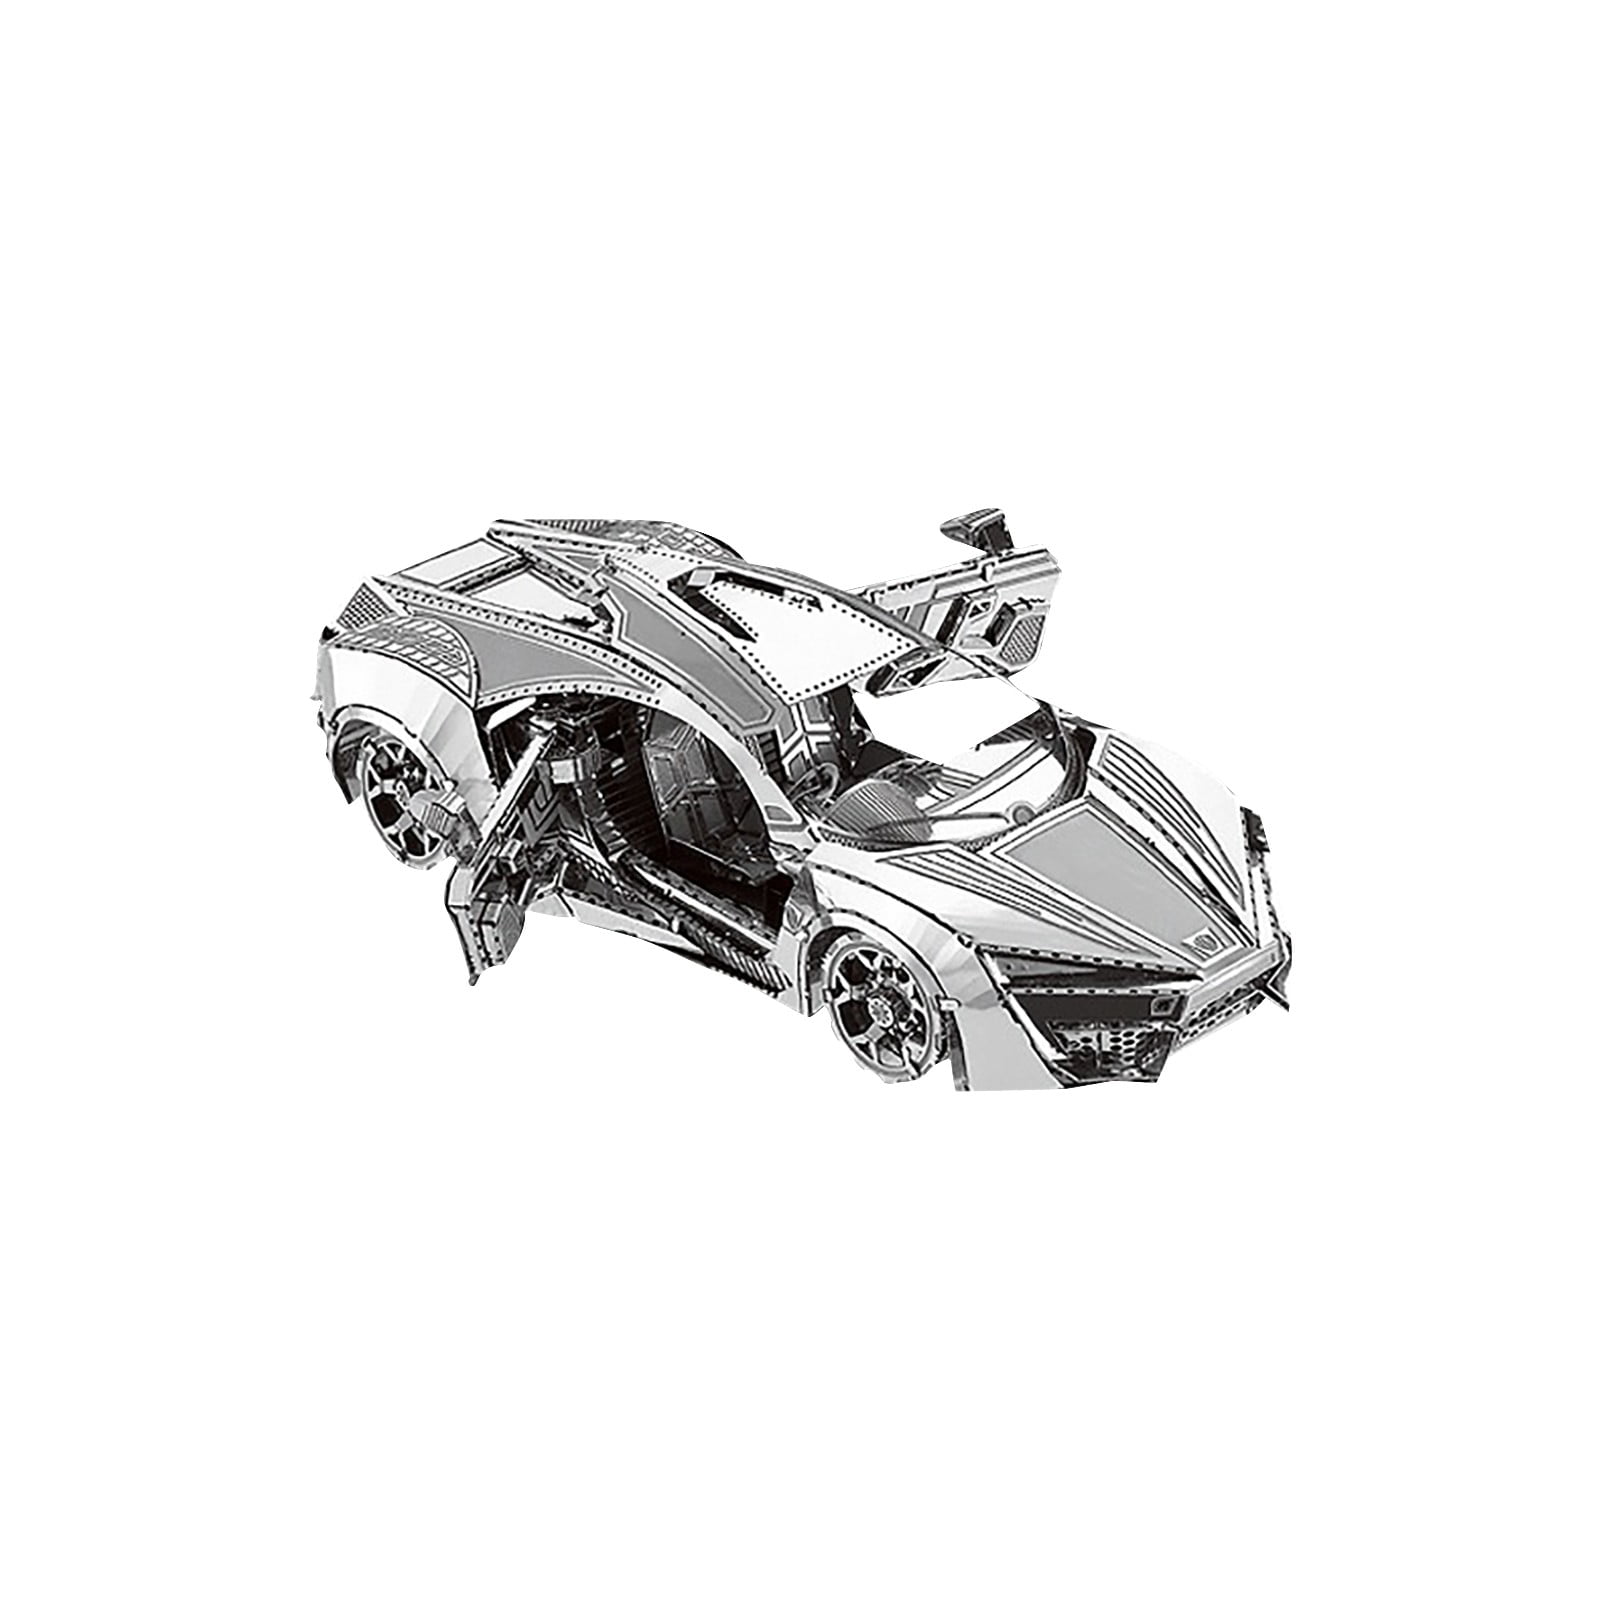 3D Metal Assembled Models DIY Puzzles  Sports Car Models Desktop Decoration 